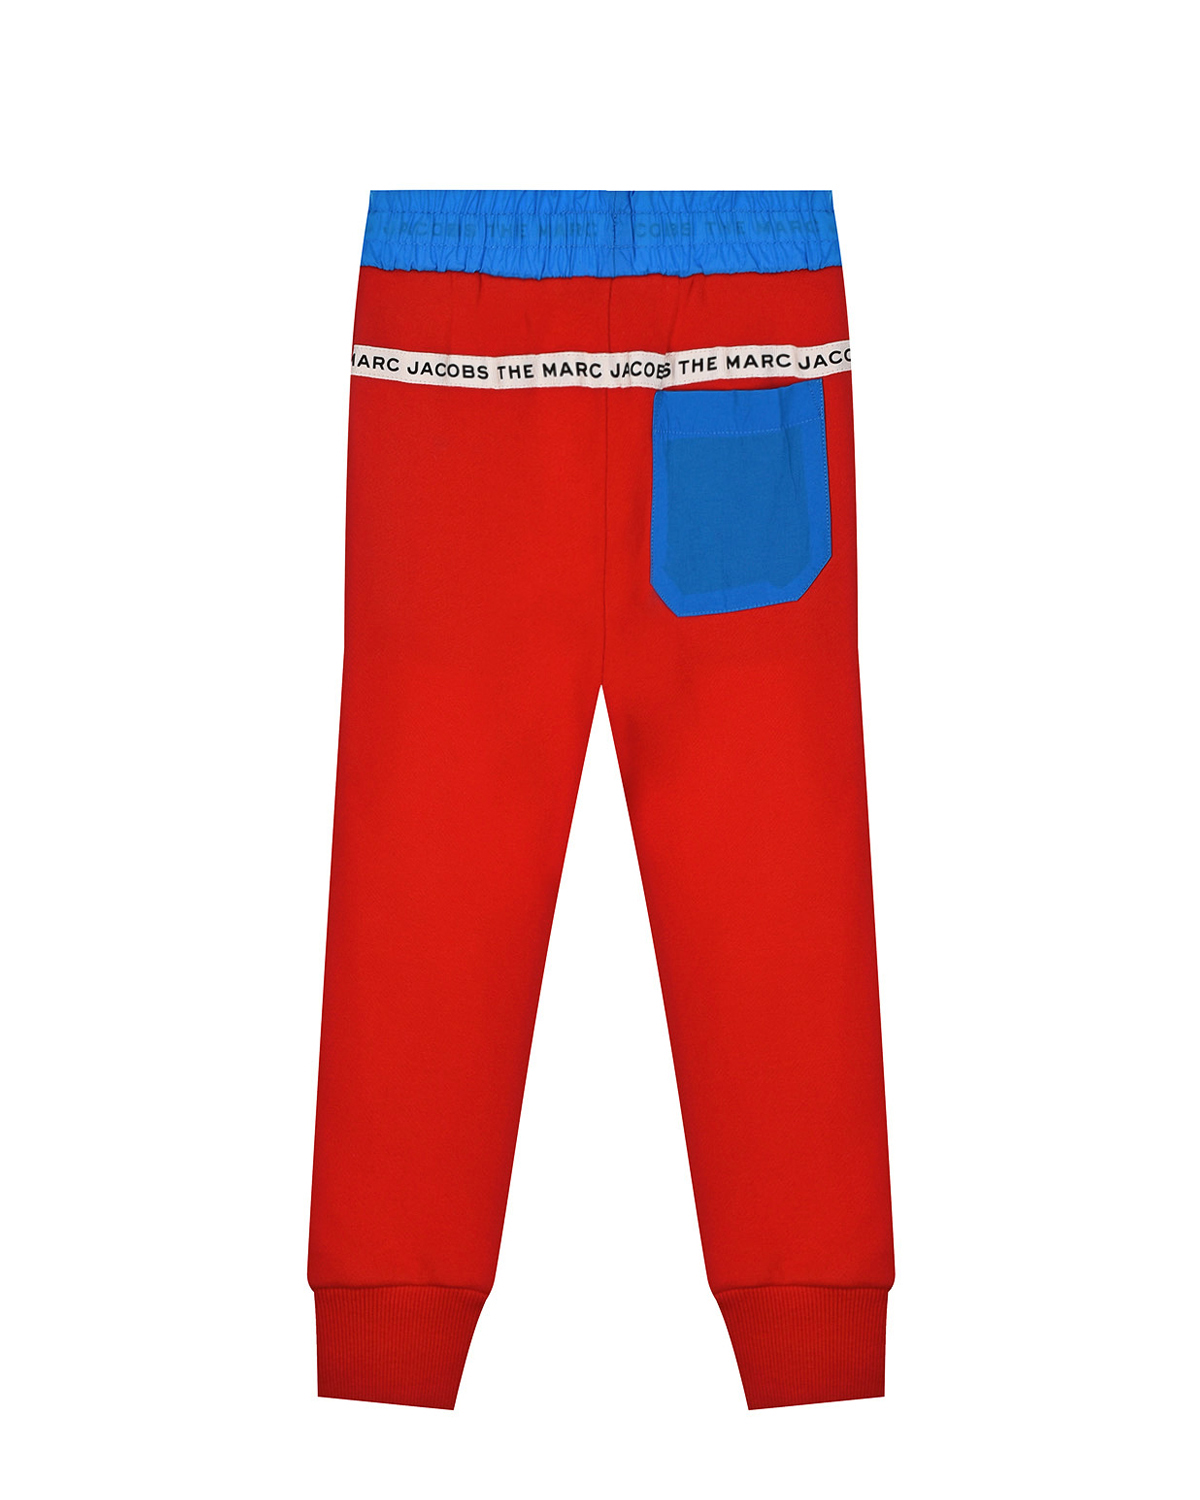 Красные спортивные брюки Marc Jacobs (The) детские, размер 92, цвет красный Красные спортивные брюки Marc Jacobs (The) детские - фото 2